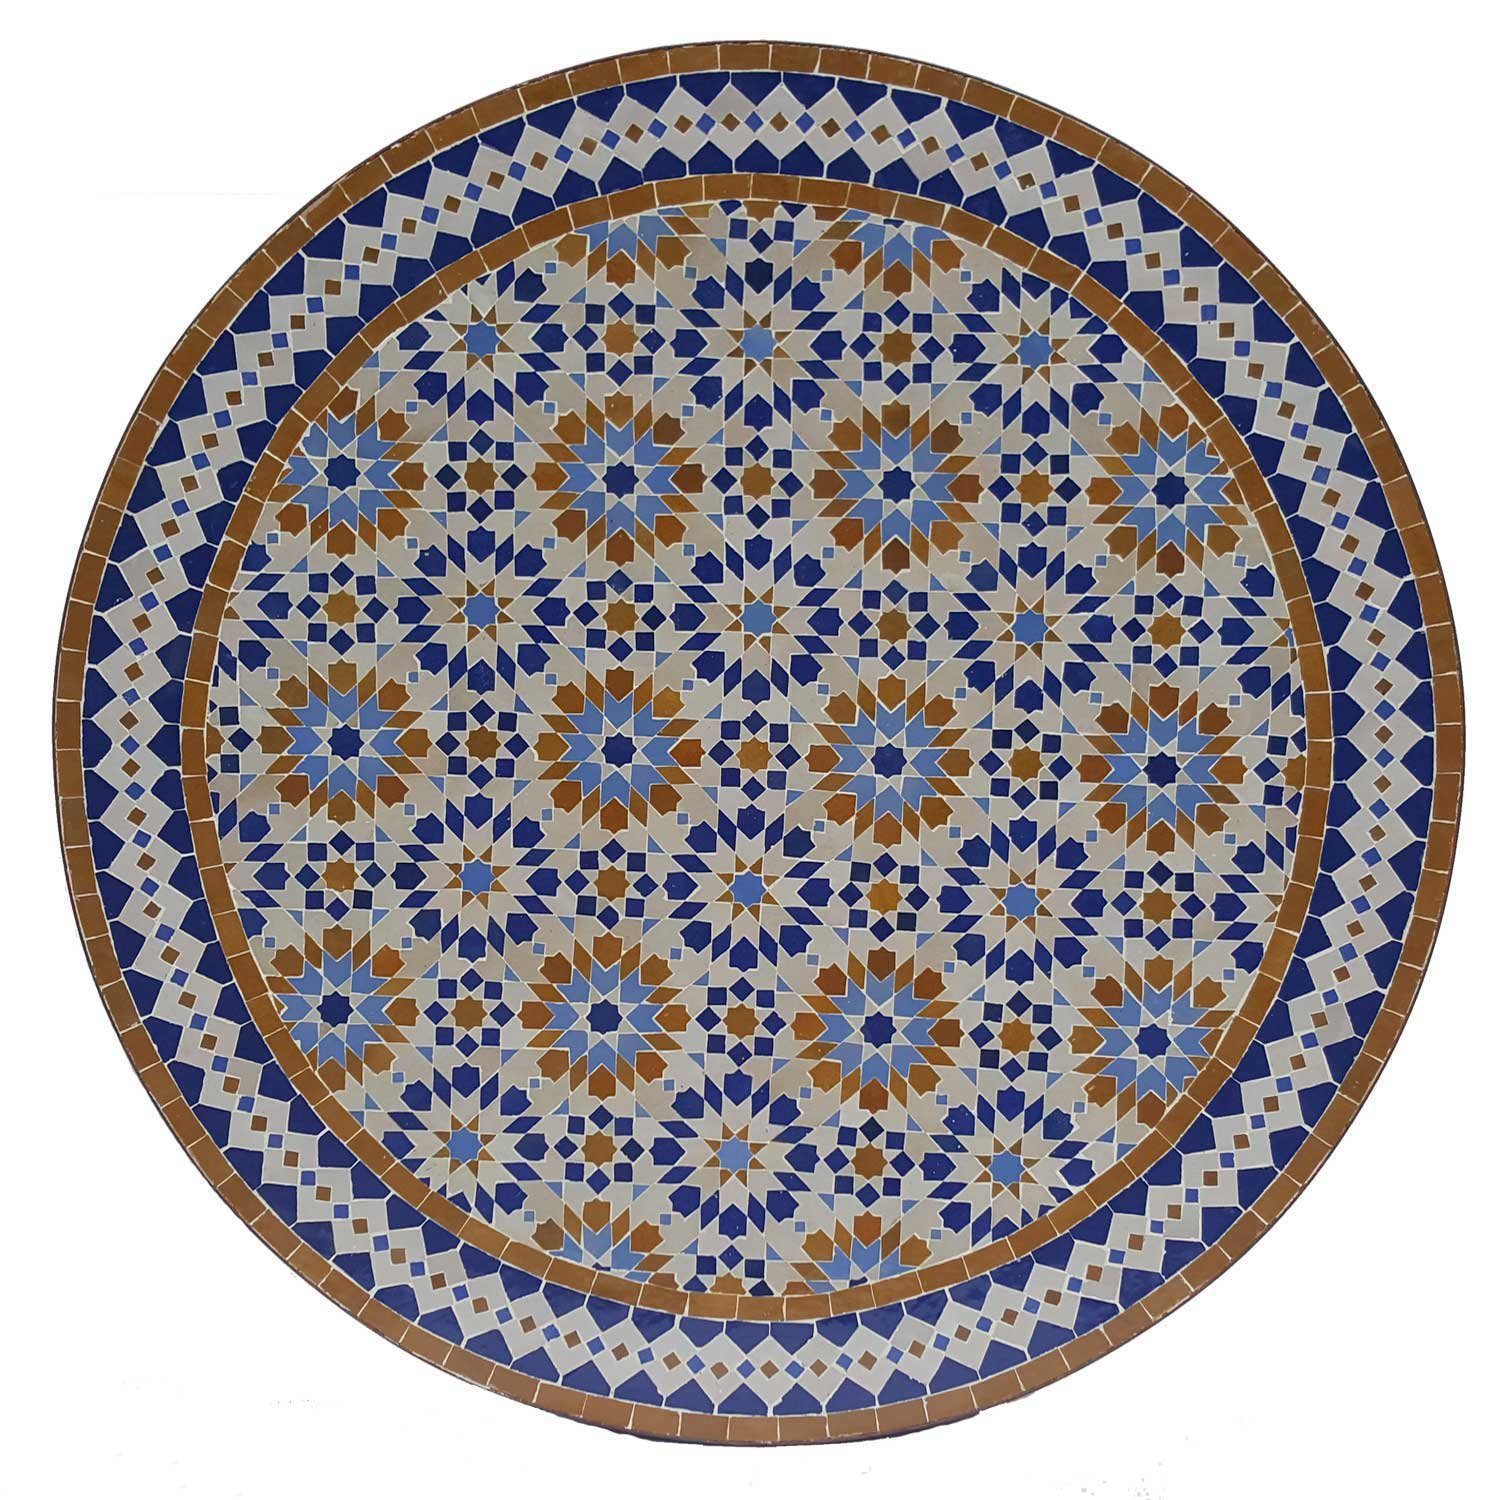 Casa Moro Gartentisch Mosaiktisch D120 Ankabut Braun Blau rund Mosaik Esstisch (Terrasse Garten Esszimmer Tisch), Kunsthandwerk aus Marokko